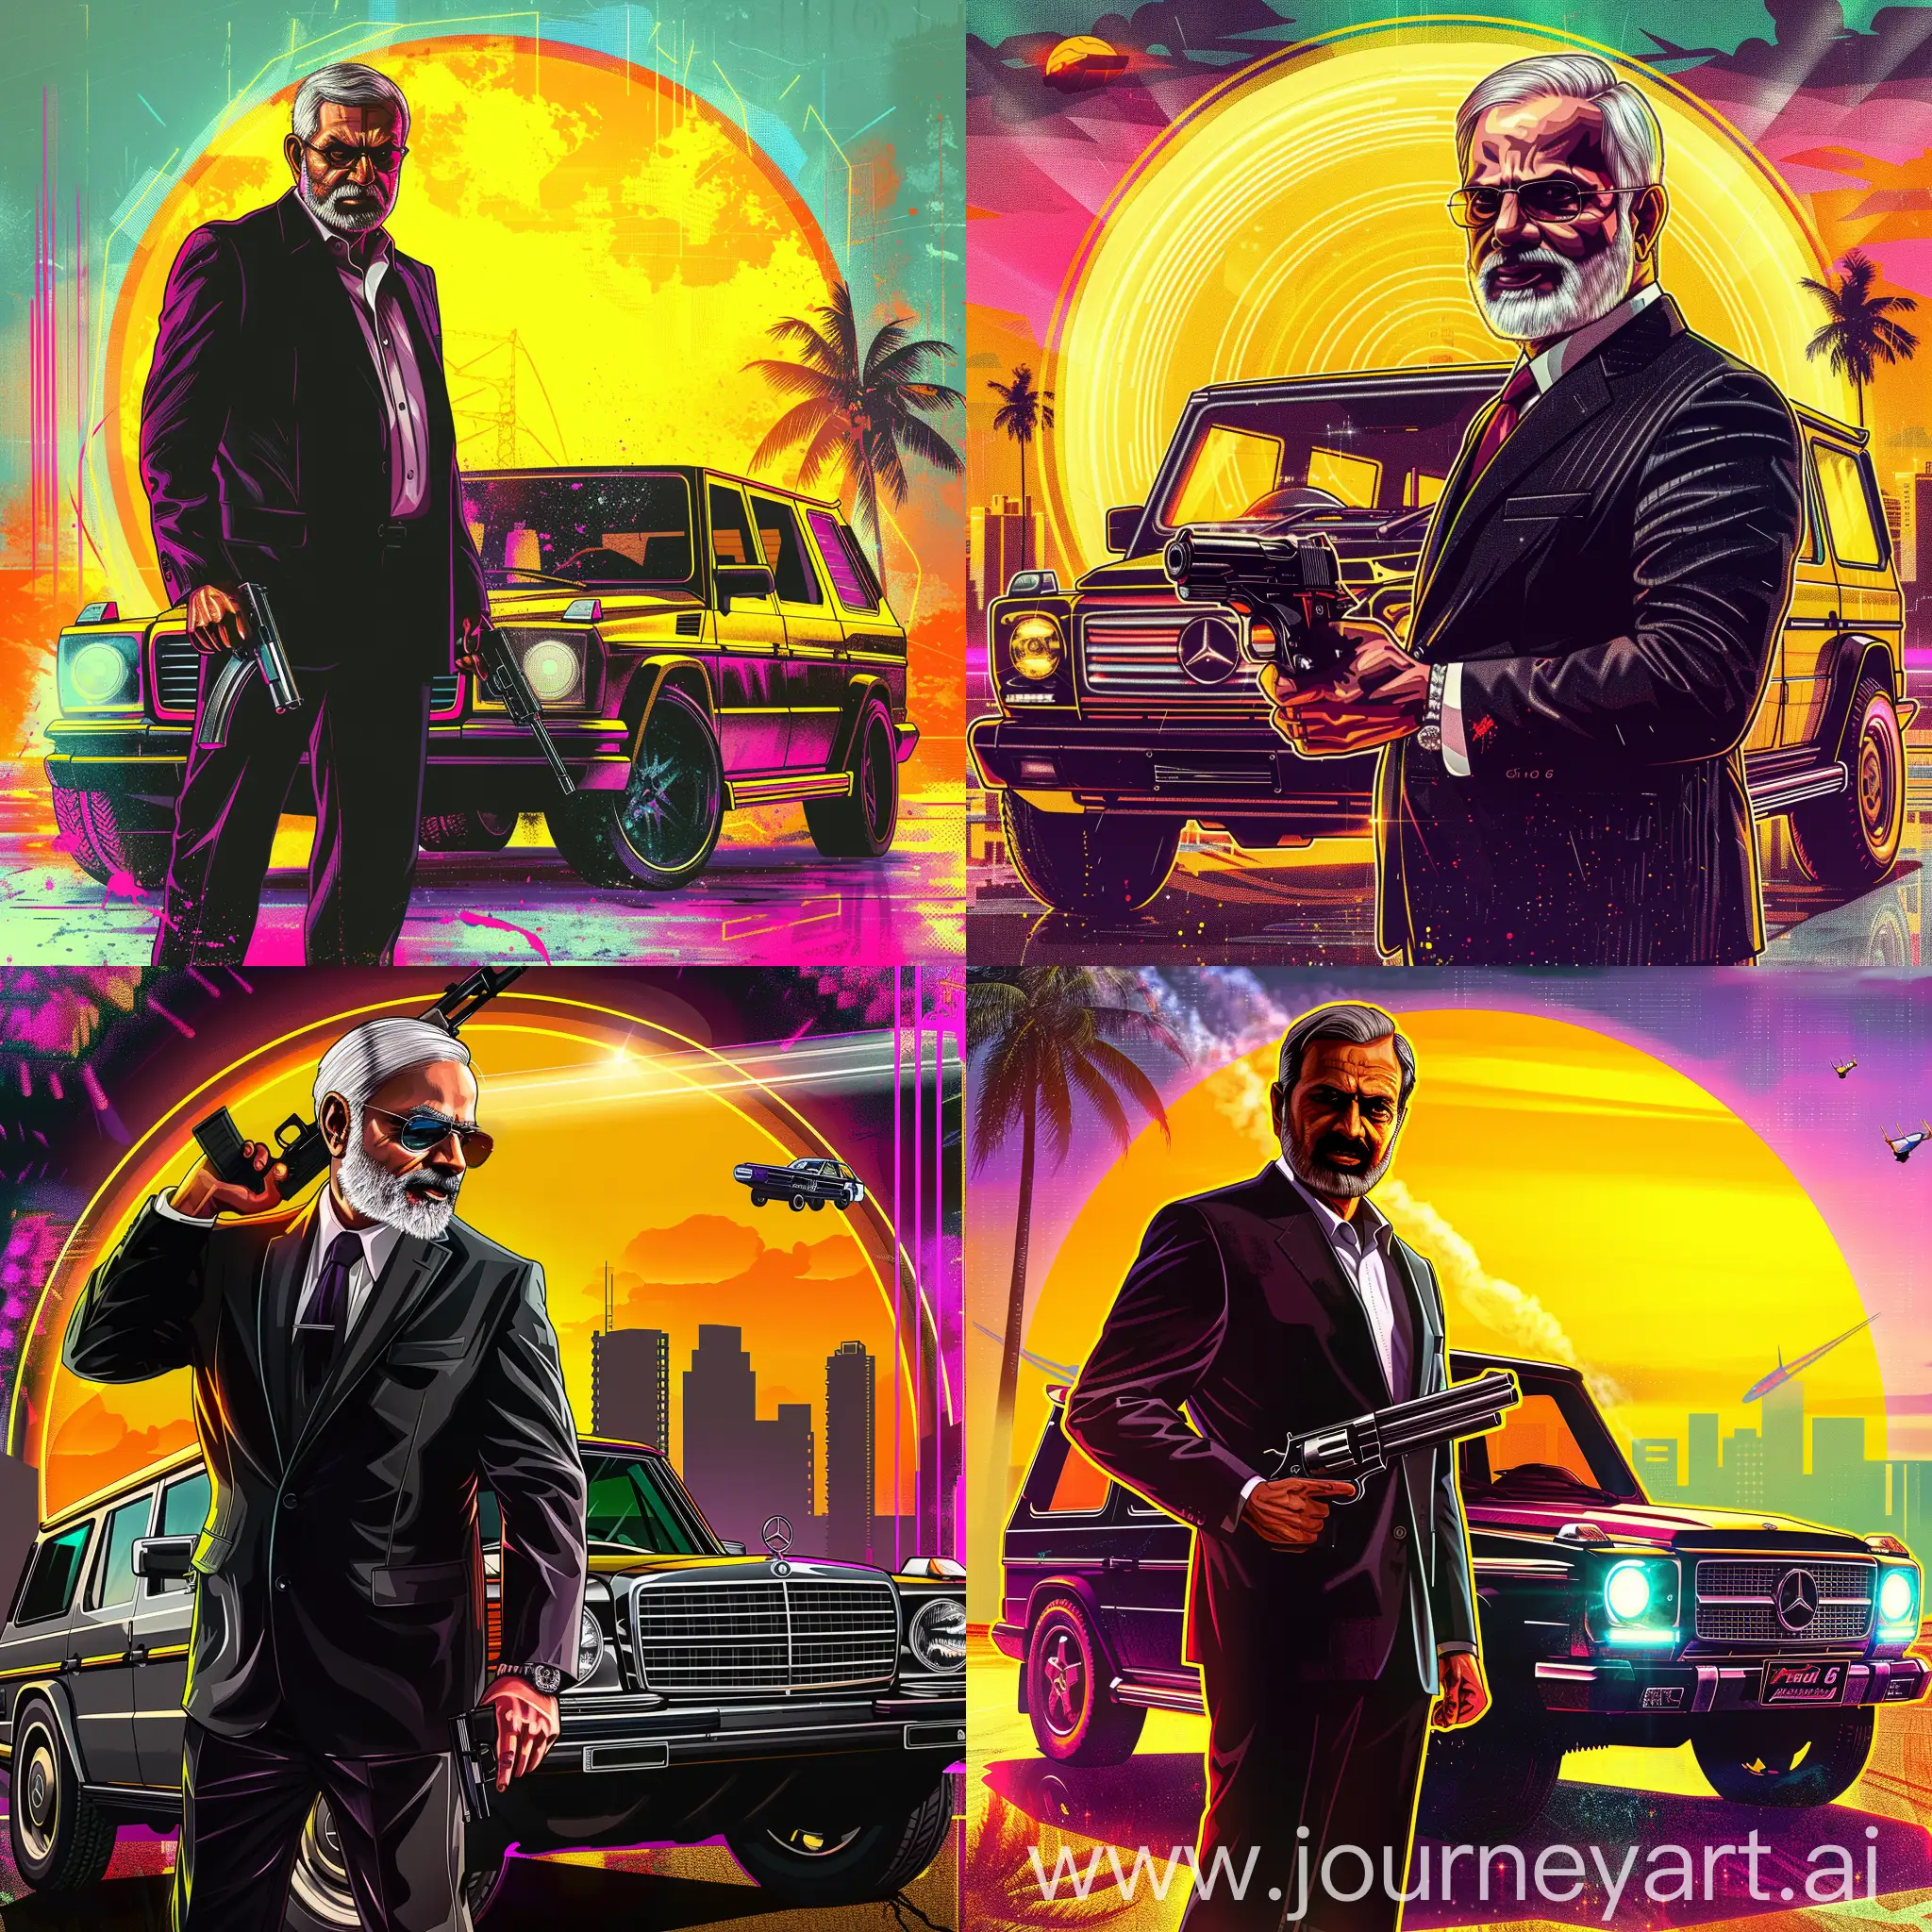 Narendra-Modi-in-Action-Grand-Theft-Auto-VI-Poster-with-Miami-Vibes